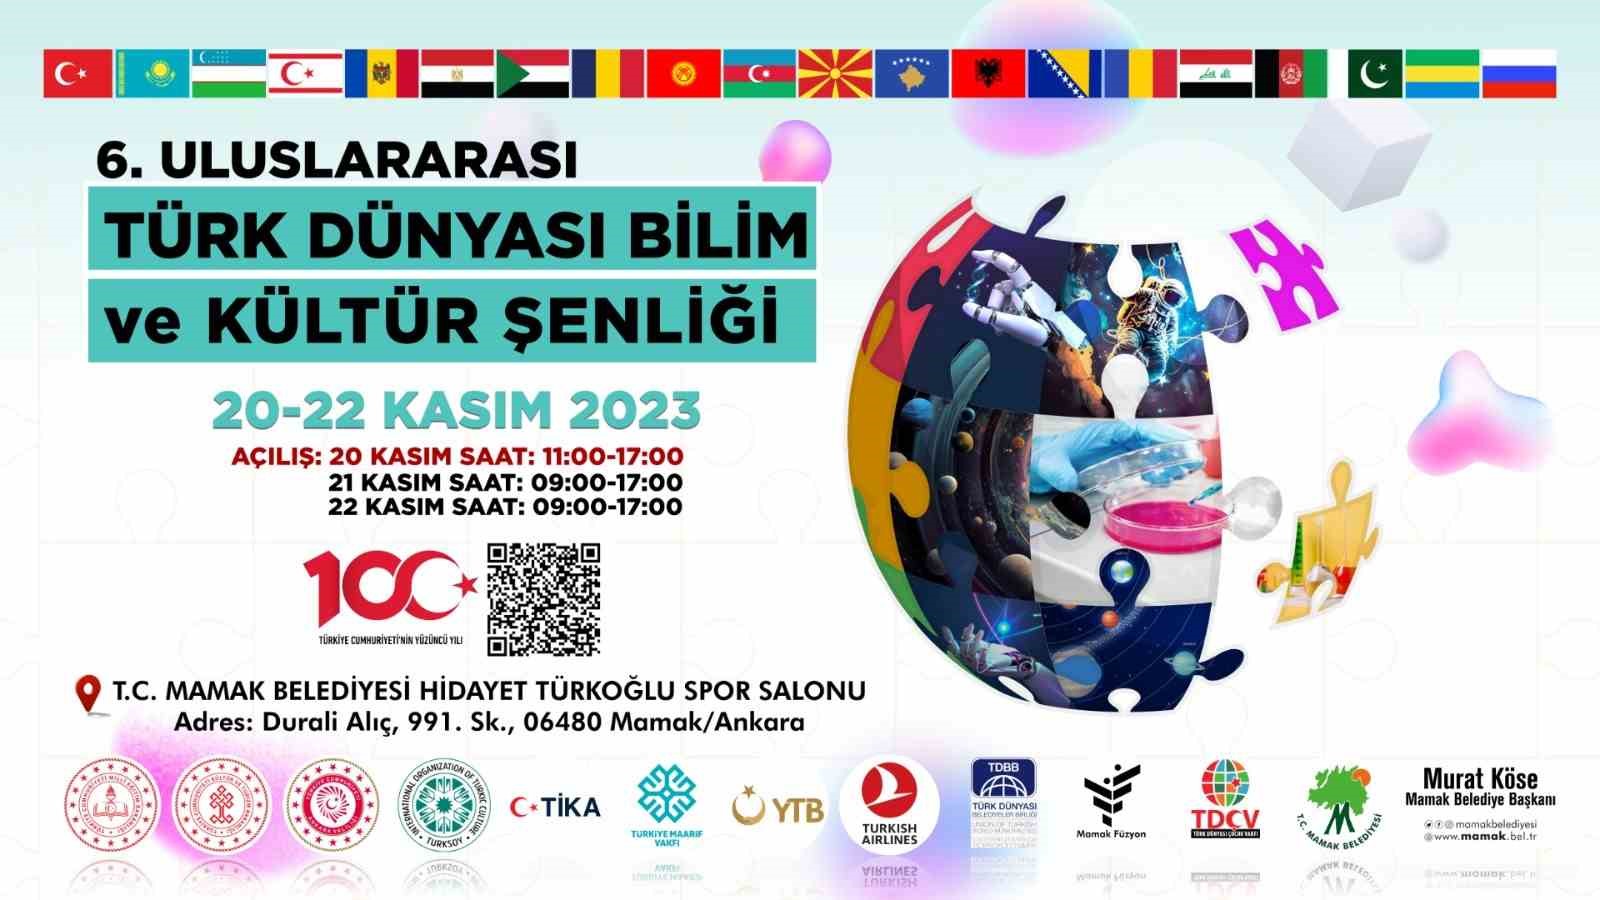 6. Uluslararası Türk Dünyası Bilim ve Kültür Şenliği 20 Kasım’da başlıyor